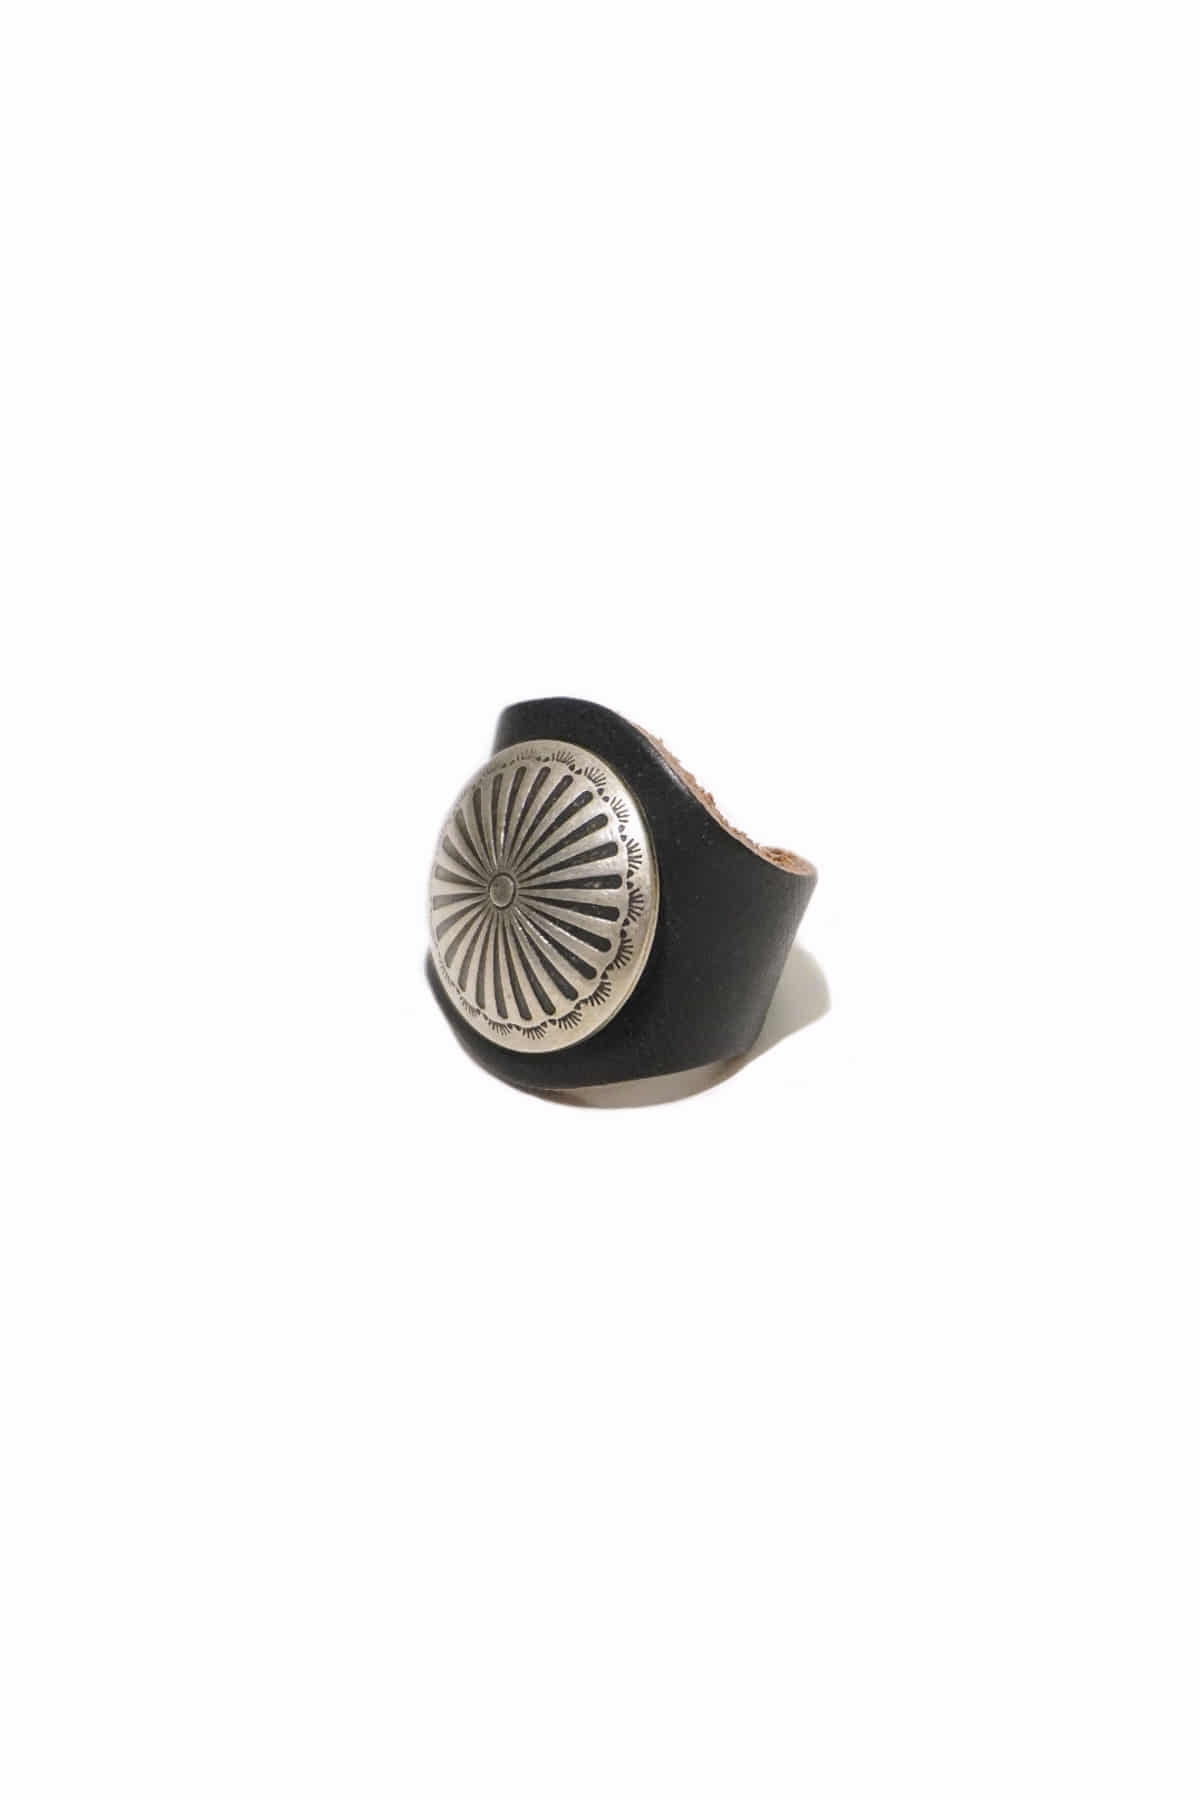 [YUKETEN] Leather Ring with Concho - Black Needlepoint